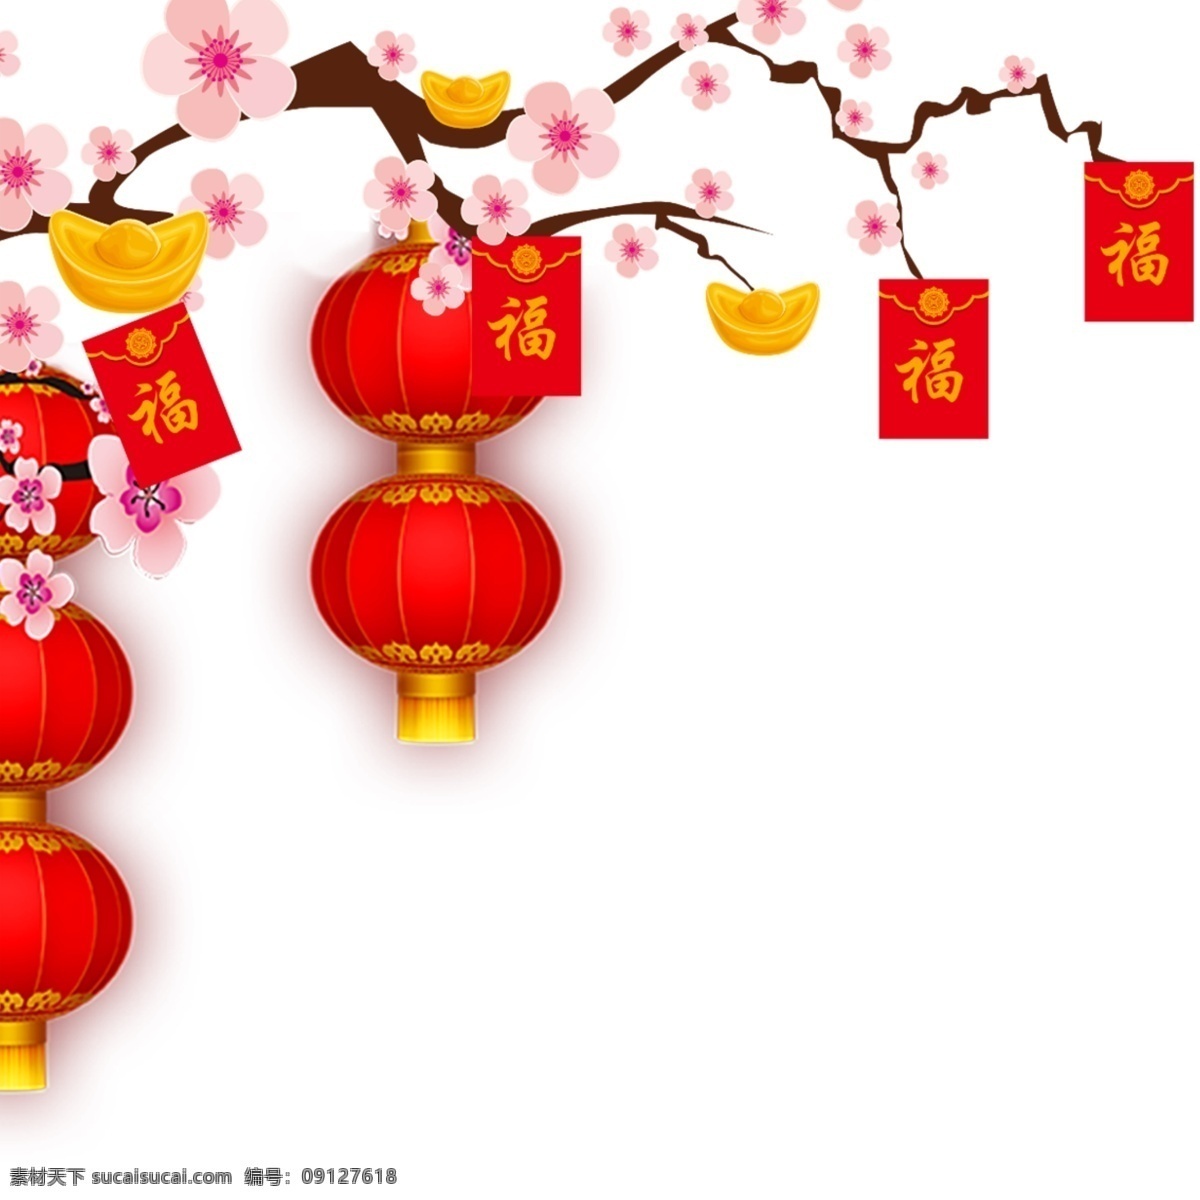 红灯笼 中国风 元旦节 新年 海 红包 新春 春节 喜庆元素